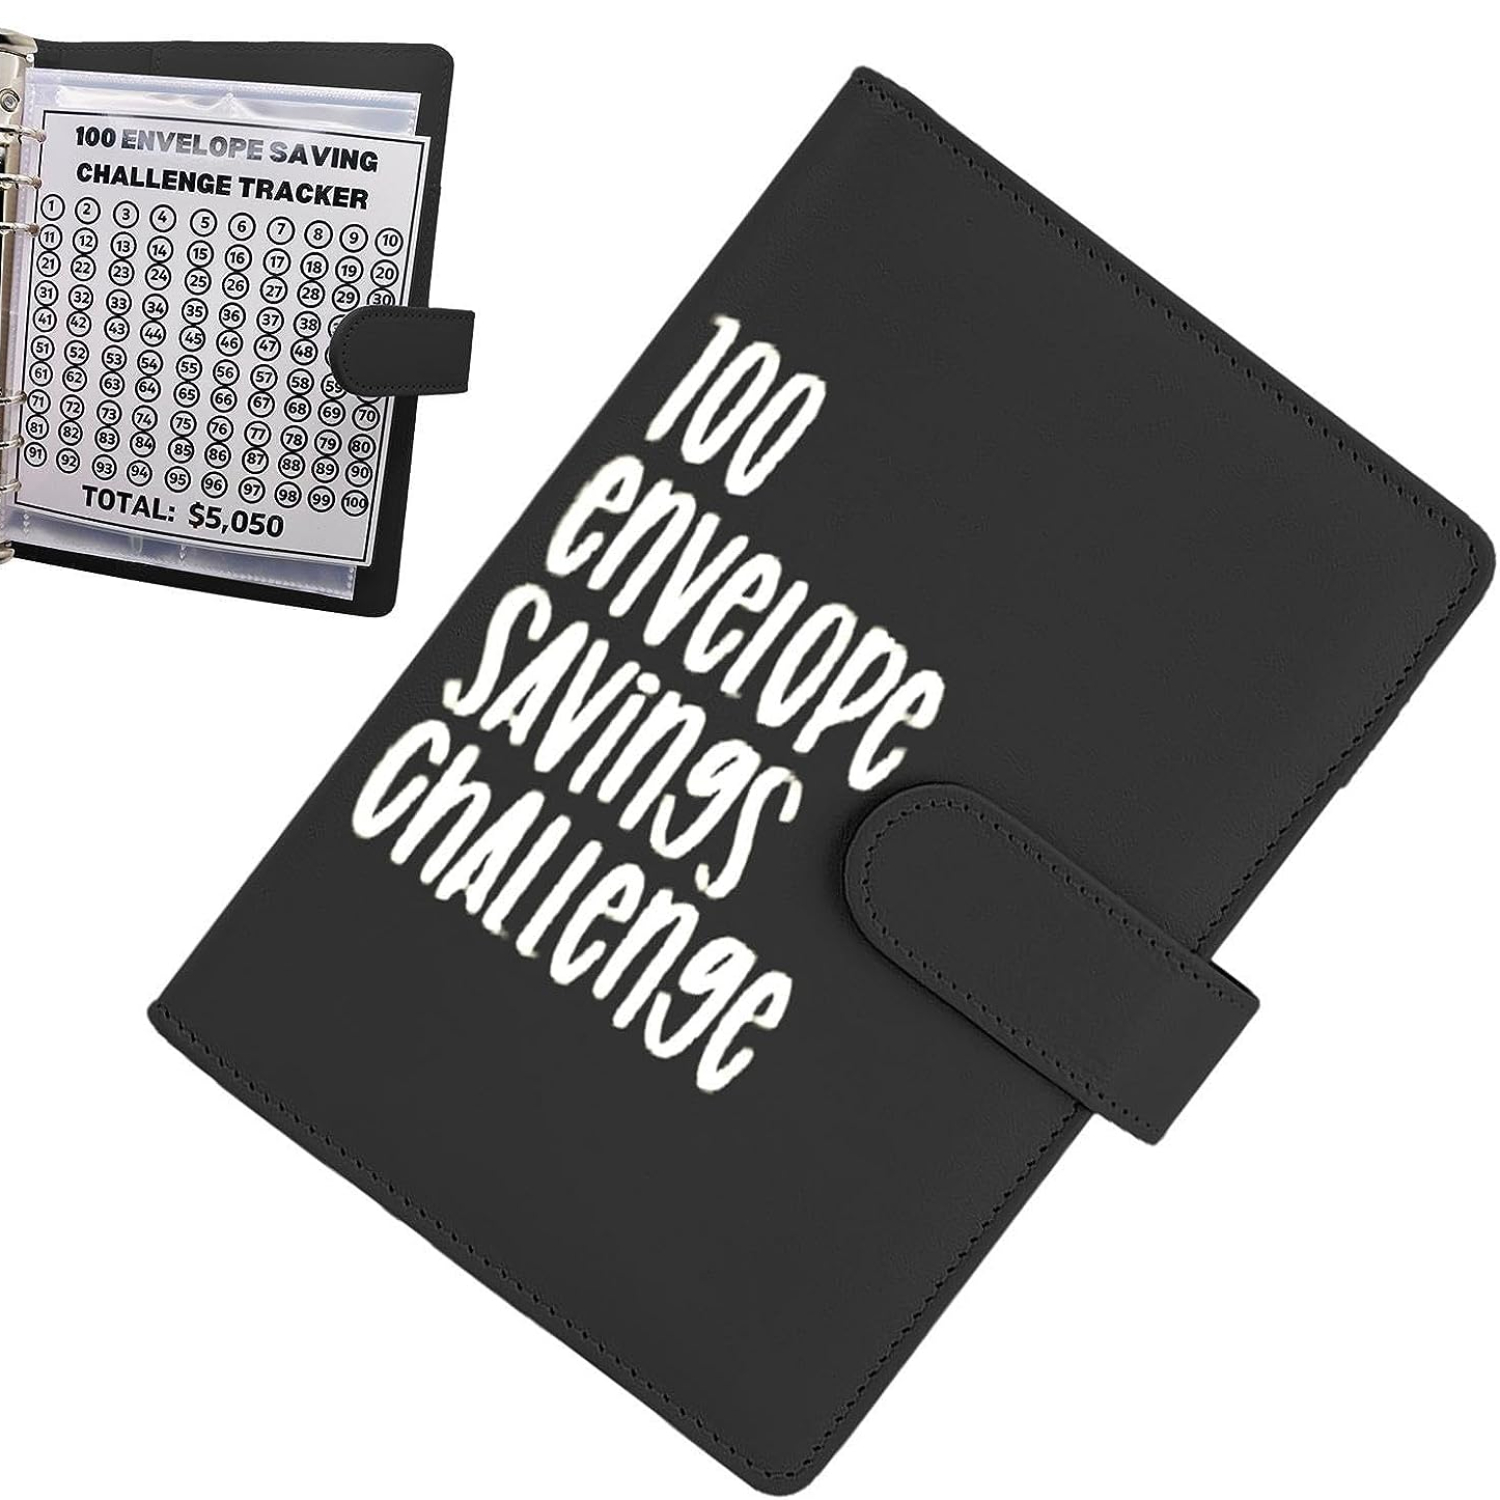  Mtkocpk Desafío de ahorro de dinero de 100 sobres, carpeta de  desafío de 100 sobres, carpeta de desafío de ahorro de dinero de 100 días  con sobres de efectivo, manera fácil